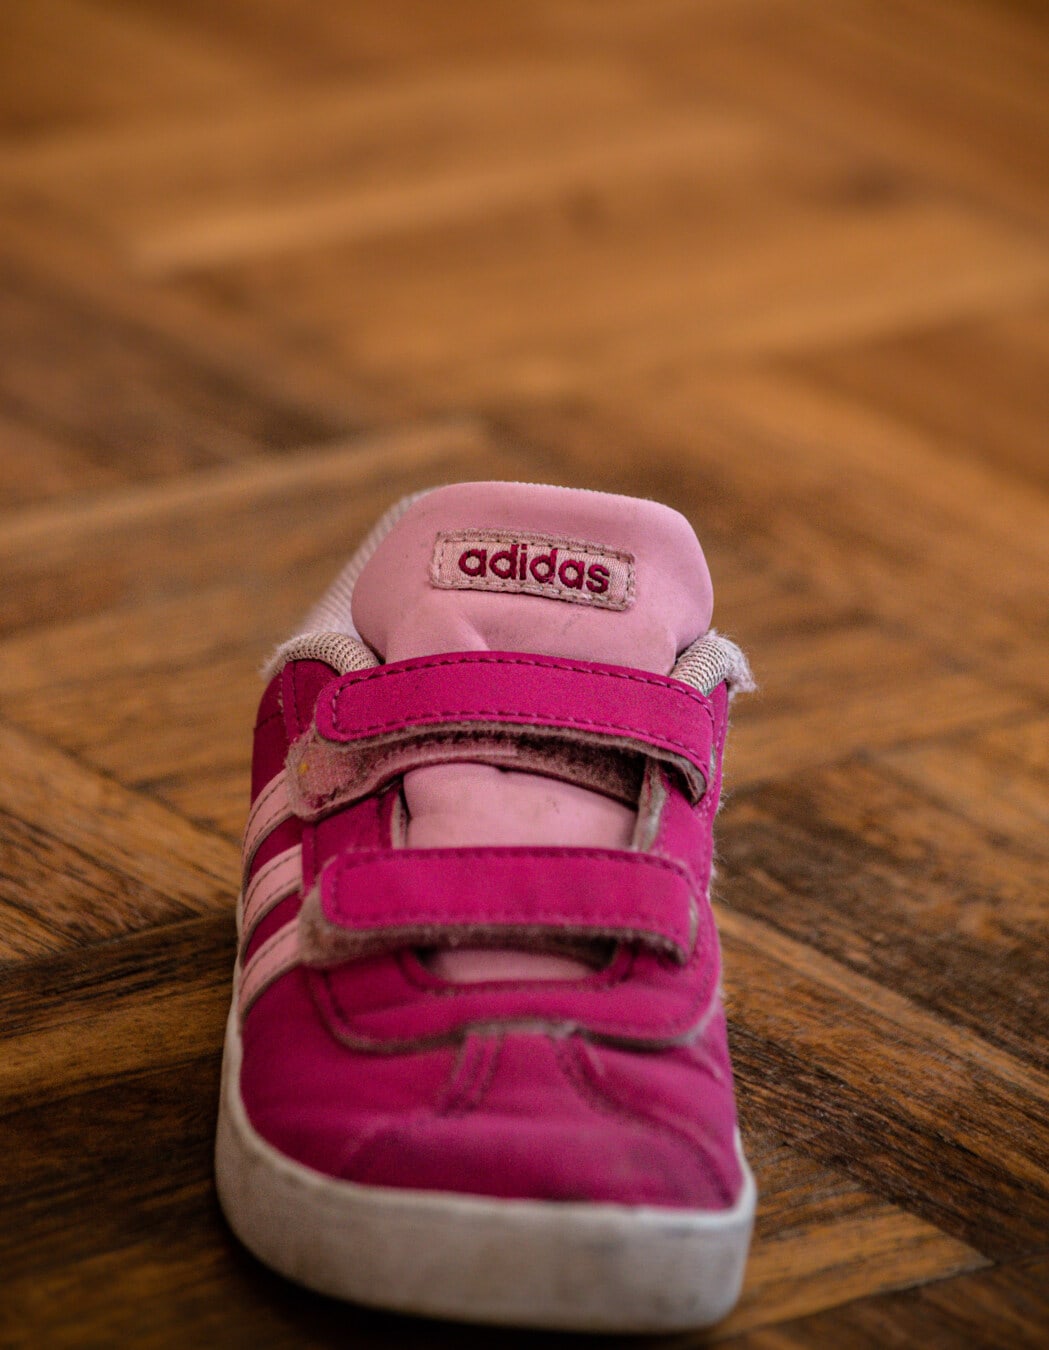 运动鞋, 小, 粉红色, 阿迪达斯, 鞋, 时尚, 舒适, 传统, 双脚, 对象